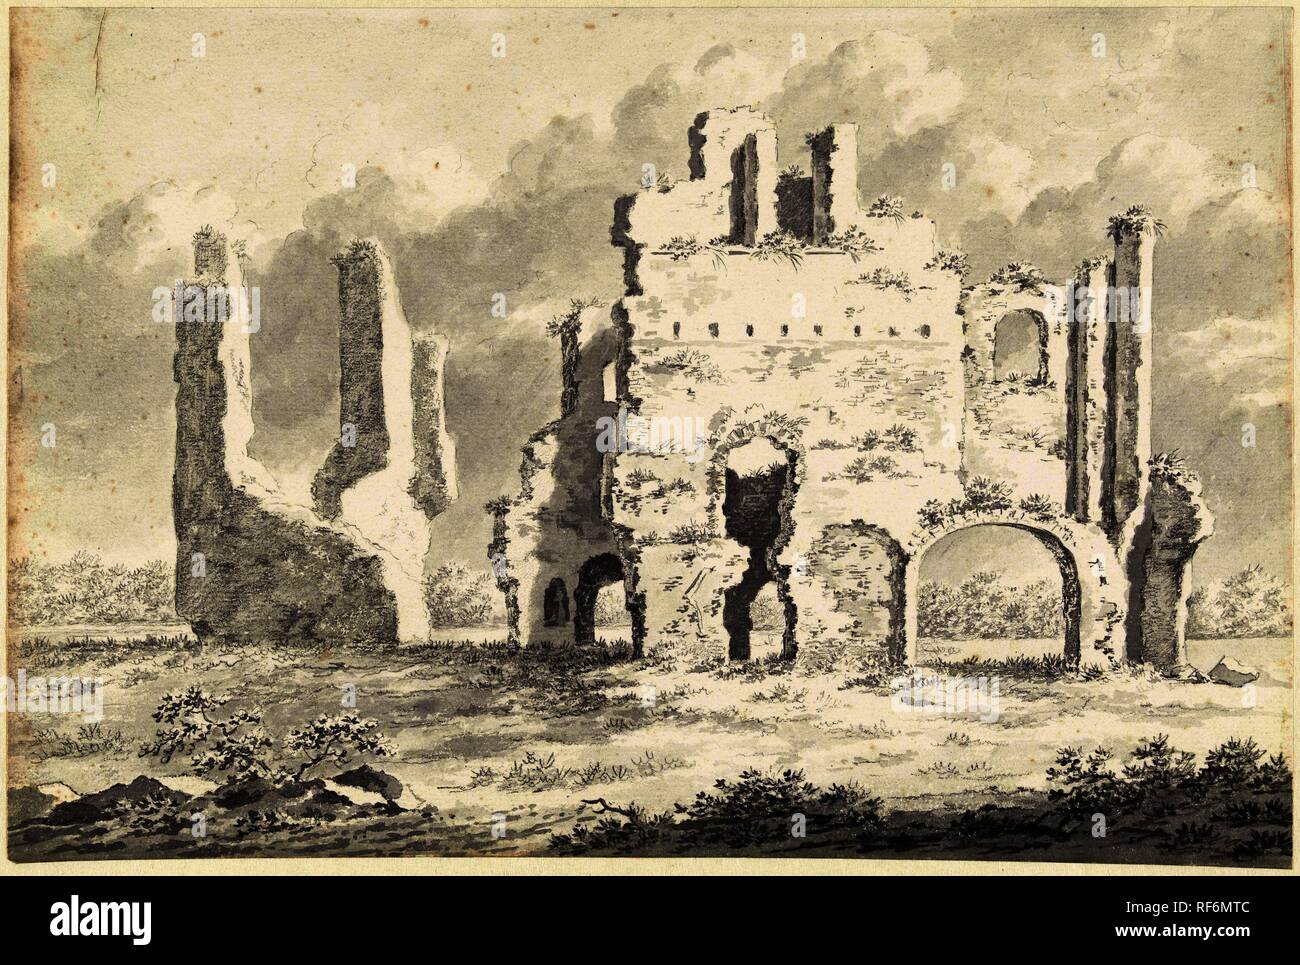 Ruine de l'abbaye de Rijnsburg. Rapporteur pour avis : Gerardus Johannes Verburgh. Dating : 1812. Dimensions : H 224 mm × W 333 mm. Musée : Rijksmuseum, Amsterdam. Banque D'Images